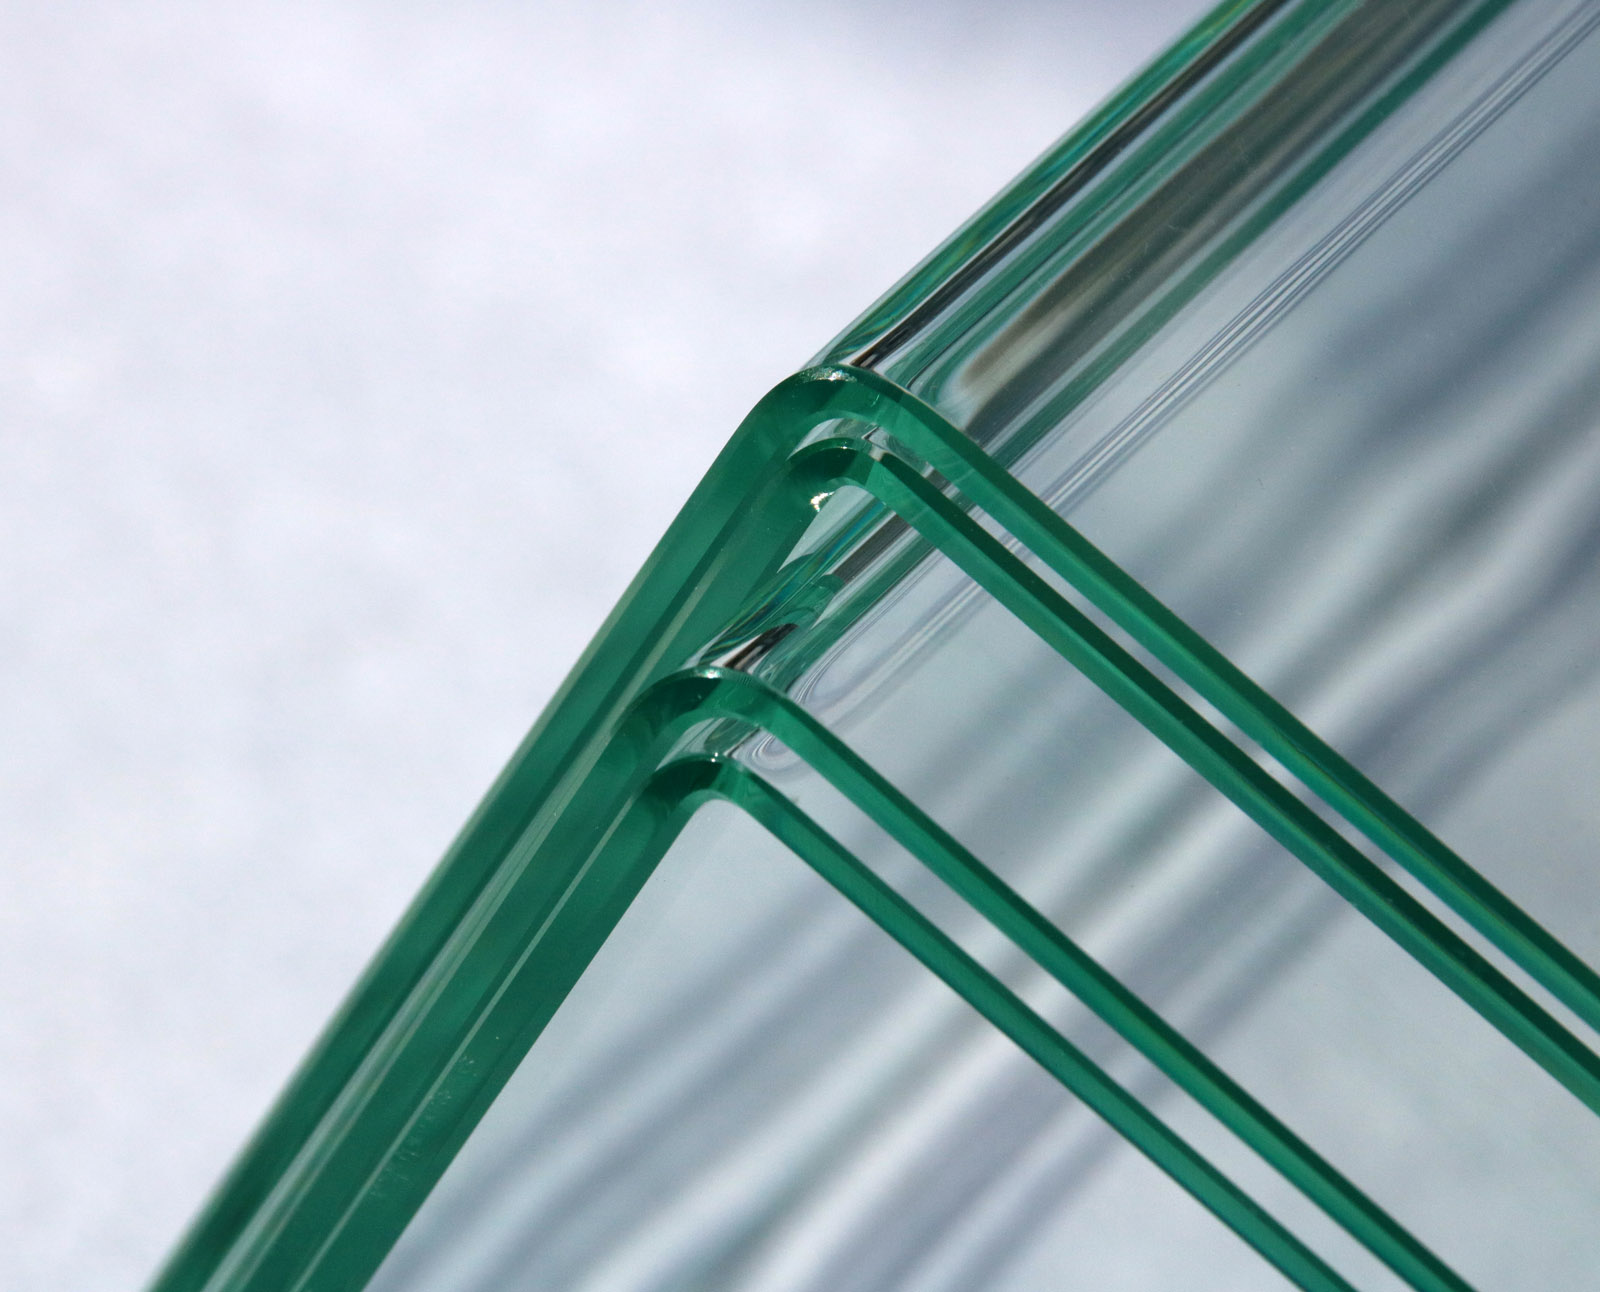 Das neue lasergestützte Glasbiegeverfahren ermöglicht exakt definierte, kleinste Biegeradien, mit denen sogar Verbundsicherheitsglas »um die Ecke« hergestellt werden kann. Die Glasscheiben im Bild sind drei mm dick.